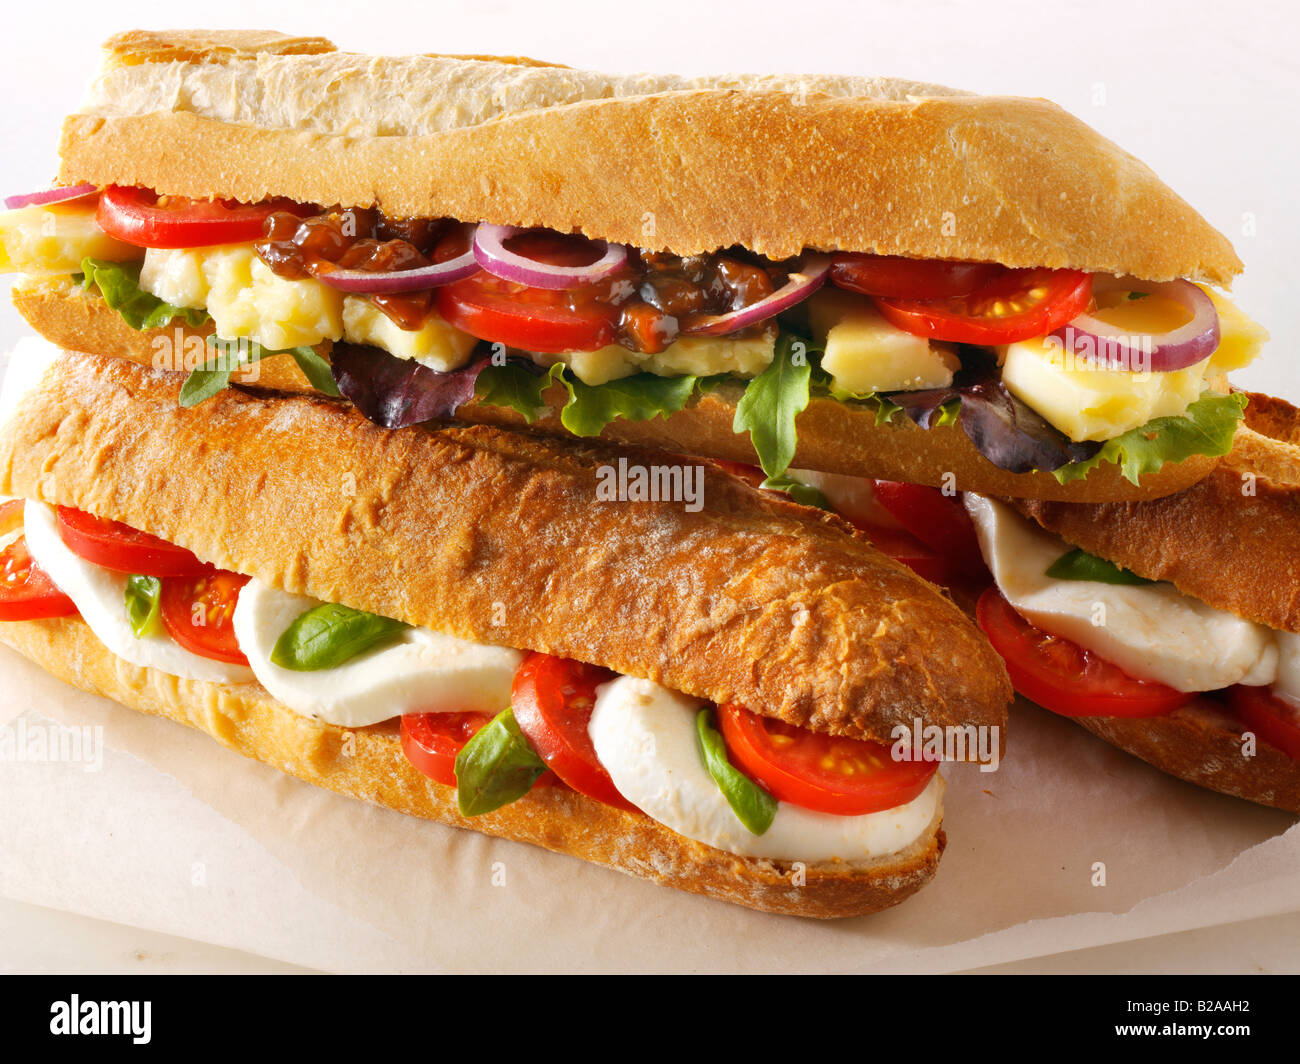 Assortiment de sandwichs baguette contre un fond blanc - Fromage et salade de tomates et mozzarella, pain baguette Banque D'Images